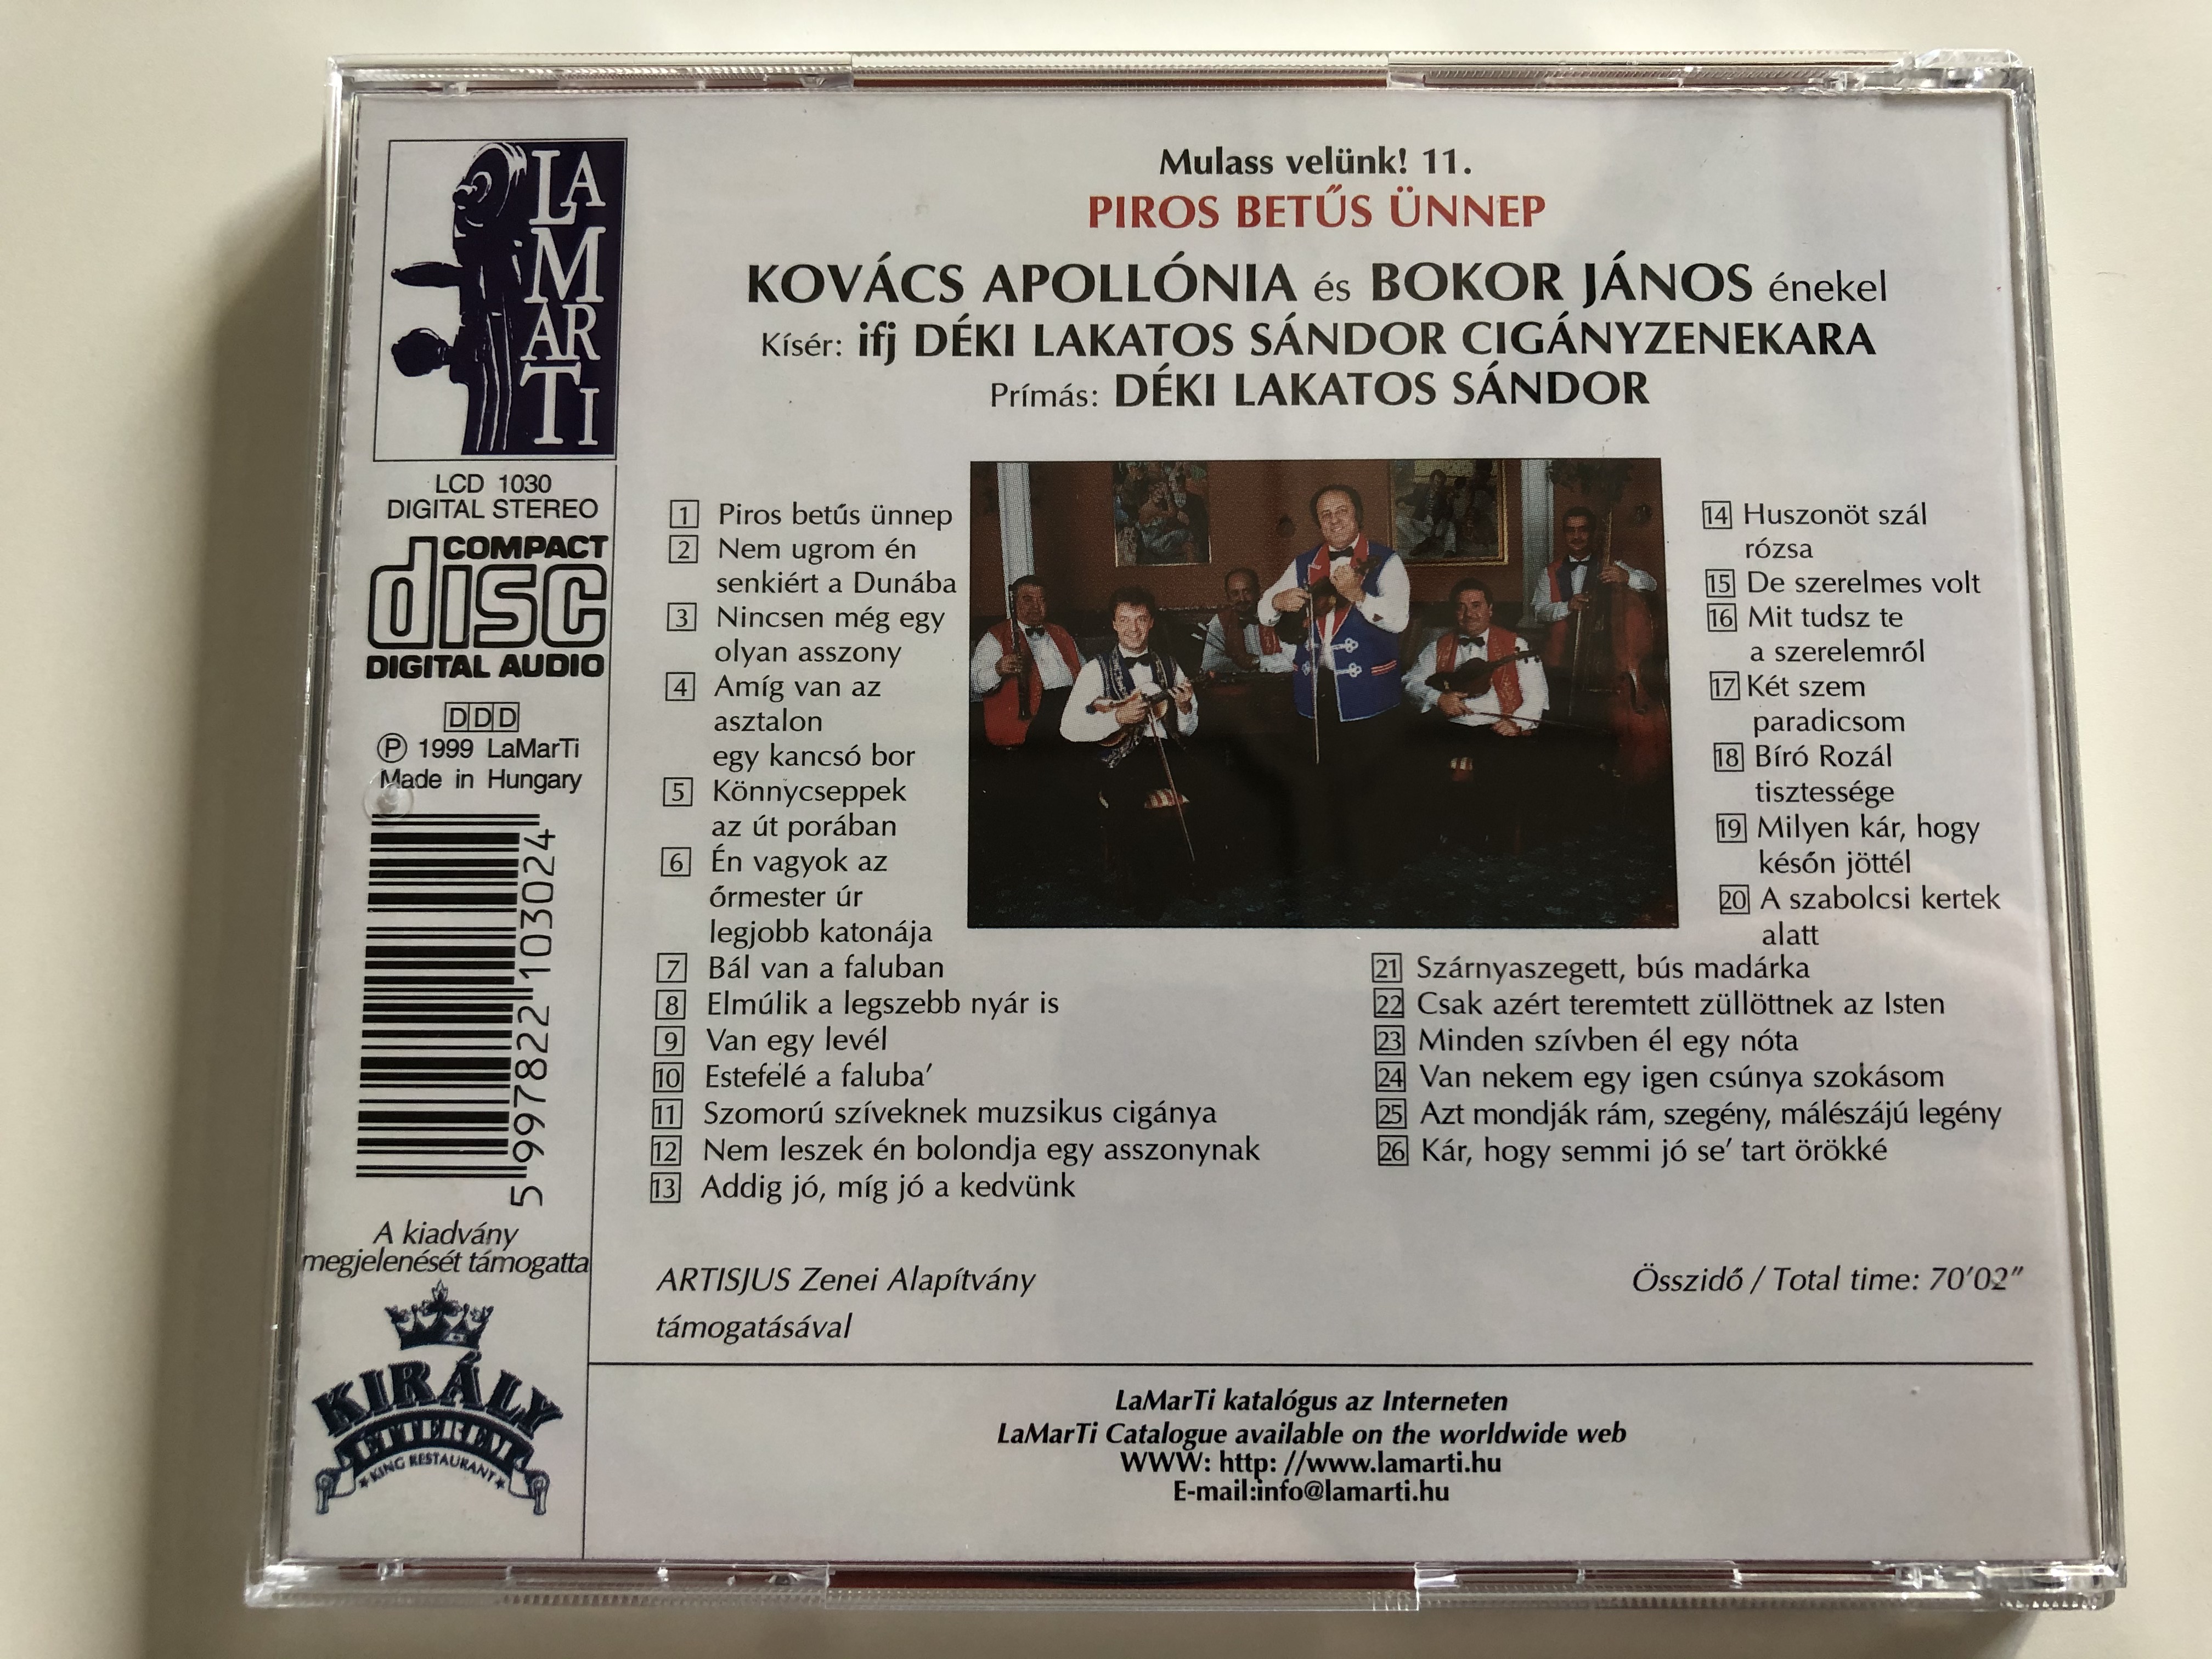 mulass-velunk-11.-piros-betus-unnep-bokor-janos-kovacs-apollonia-primas-deki-lakatos-sandor-lamarti-audio-cd-1999-stereo-lcd-1030-9-.jpg